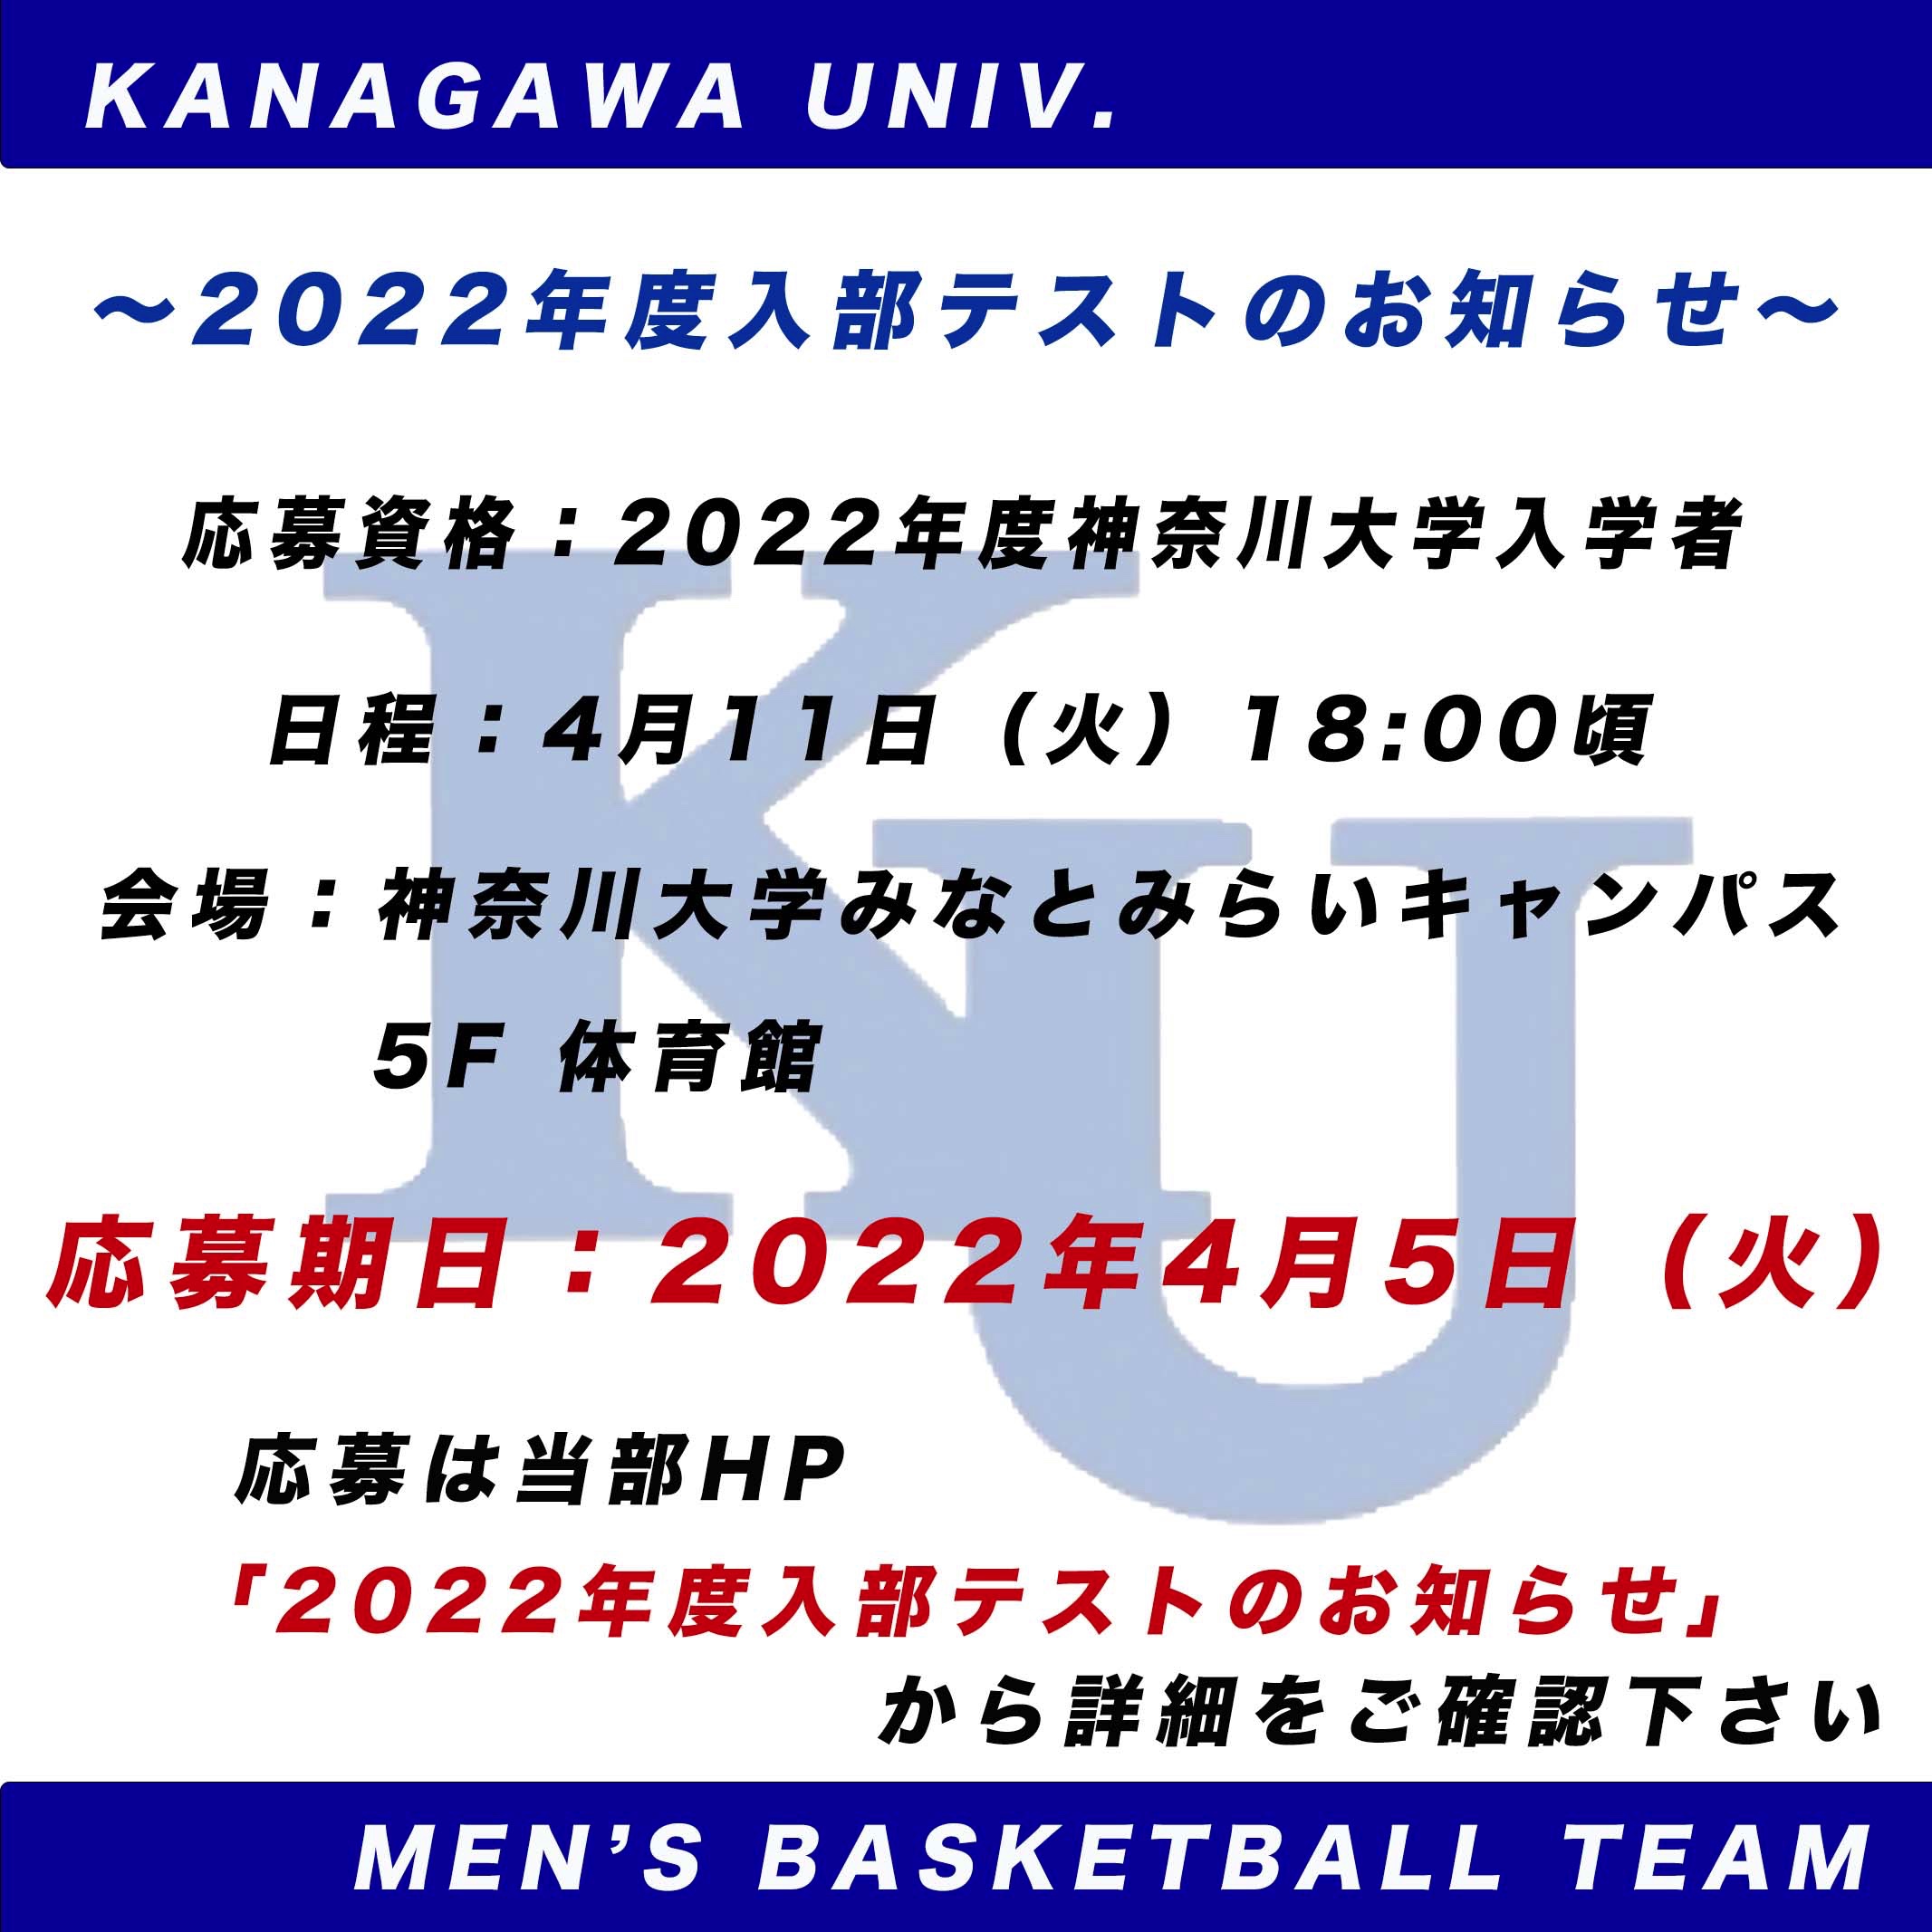 神奈川大学体育会男子バスケットボール部 ニュース